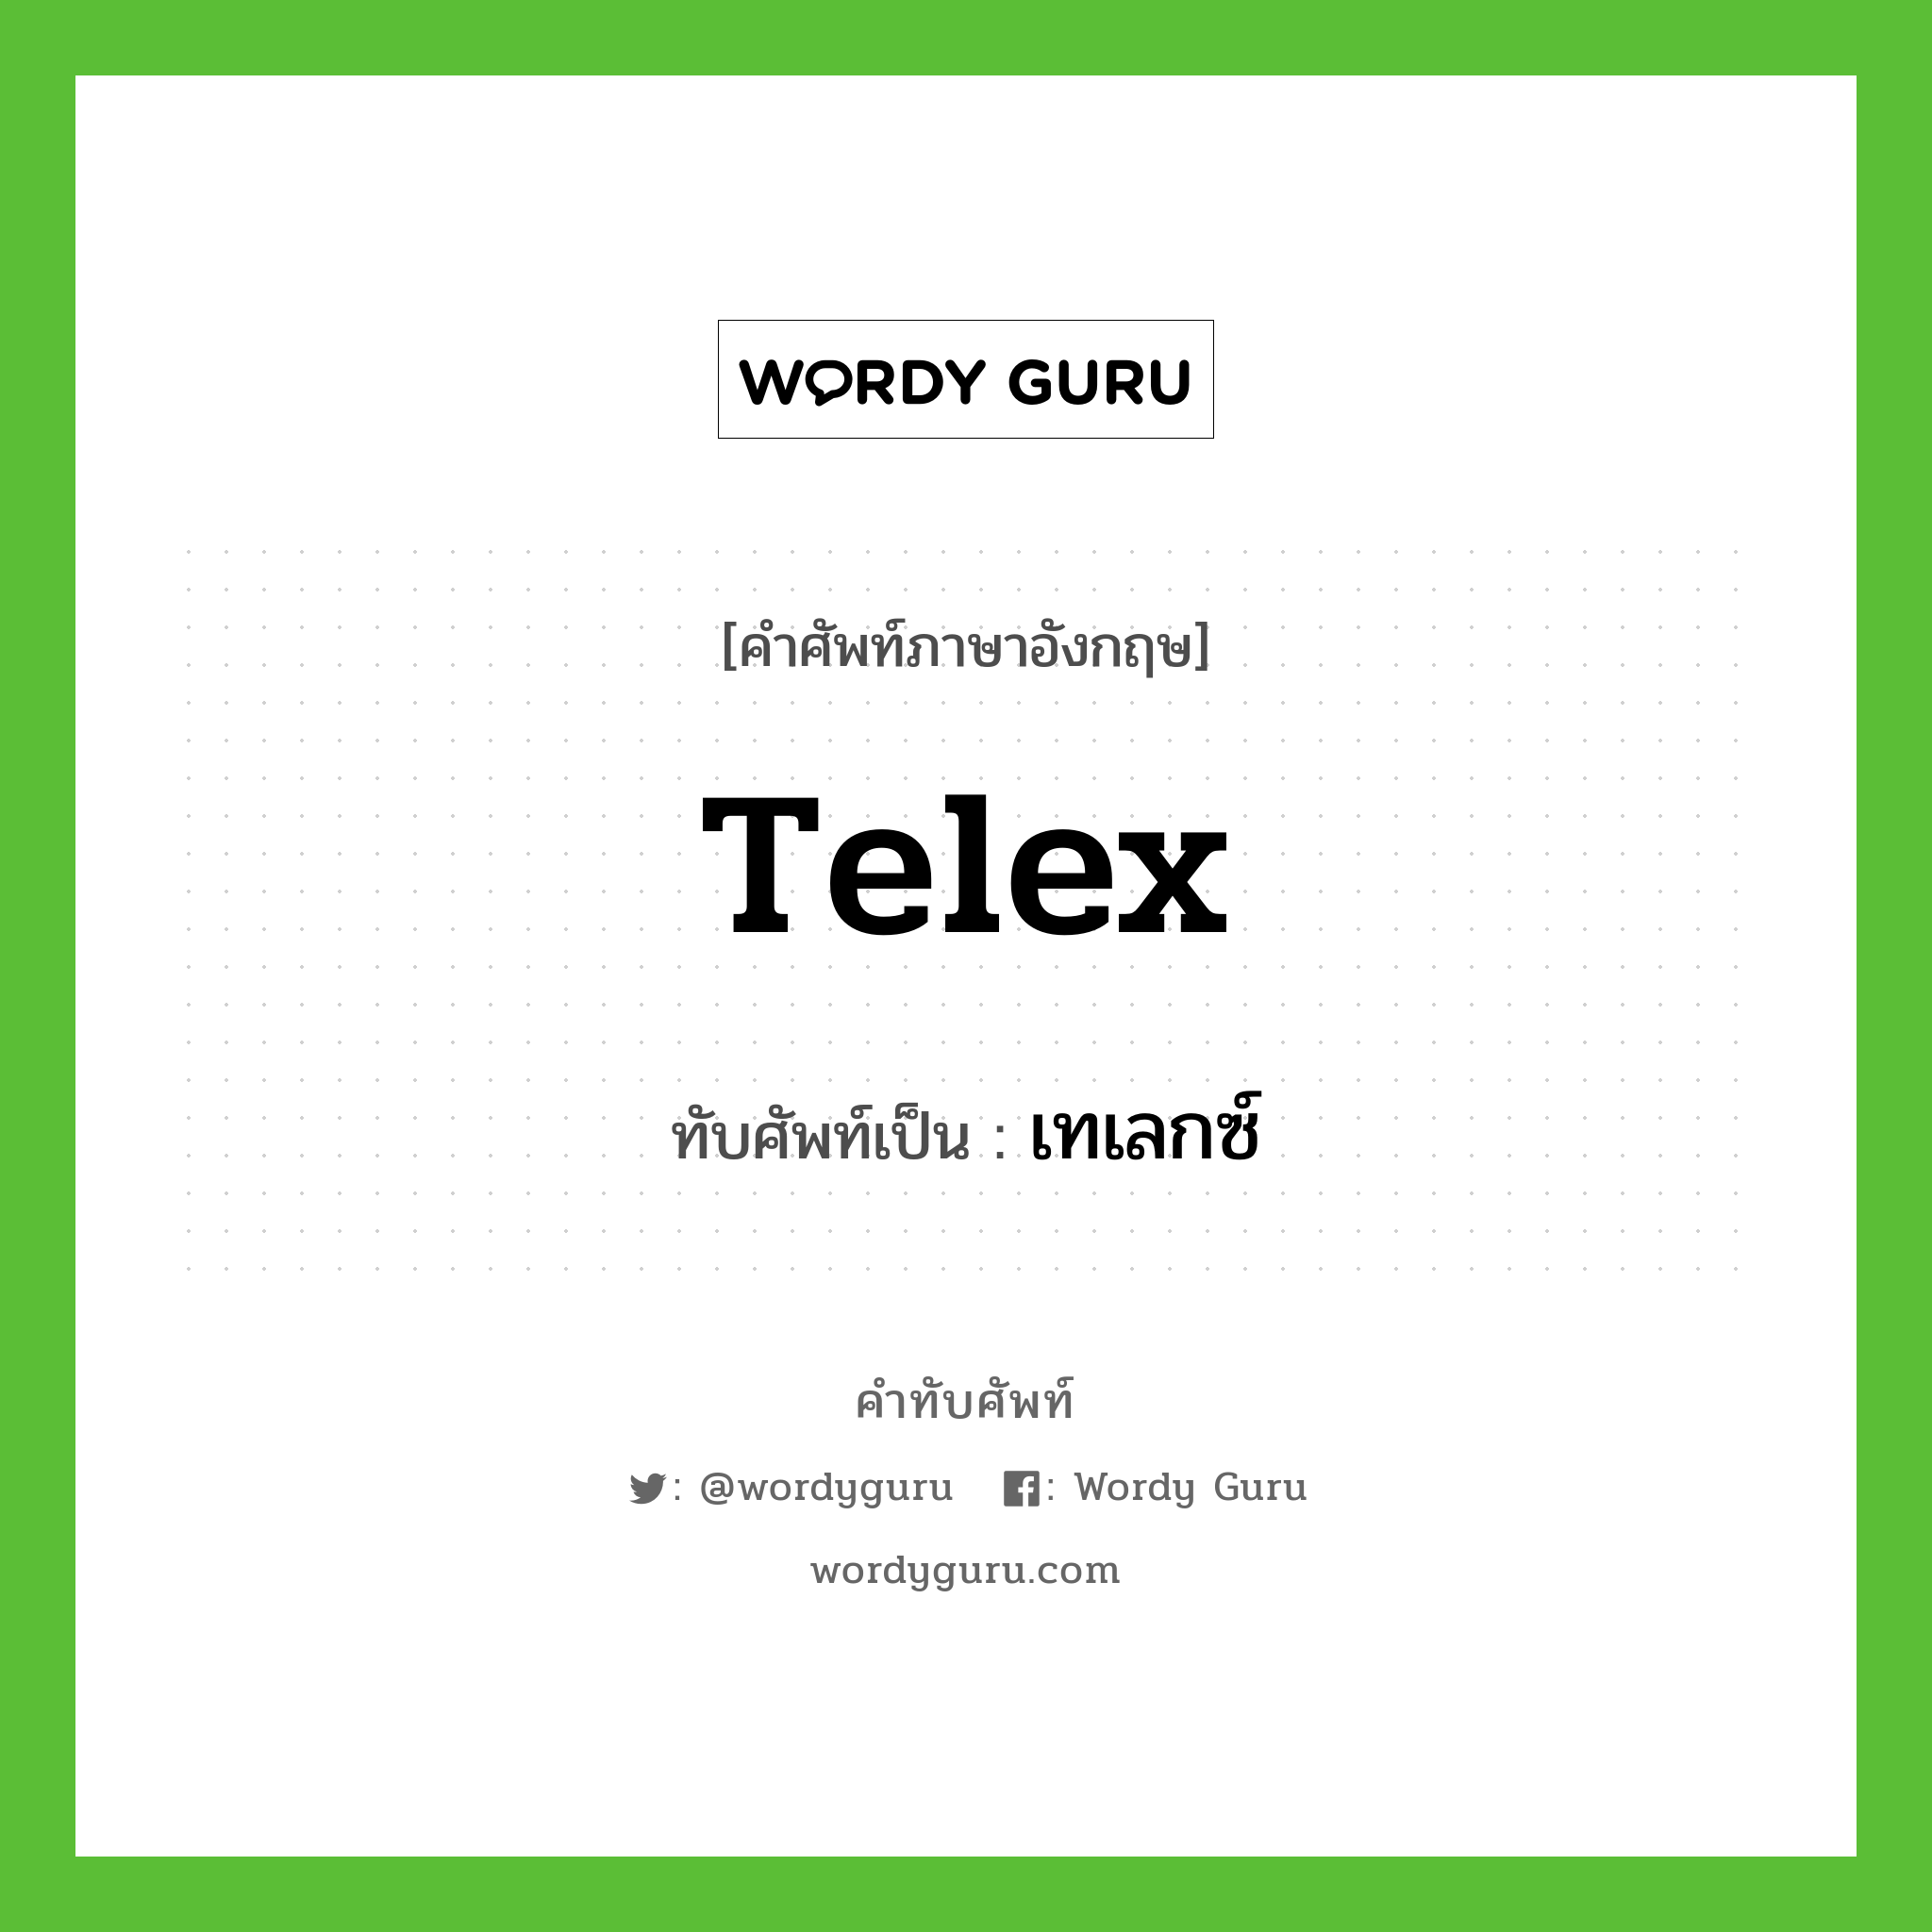 telex เขียนเป็นคำไทยว่าอะไร?, คำศัพท์ภาษาอังกฤษ telex ทับศัพท์เป็น เทเลกซ์